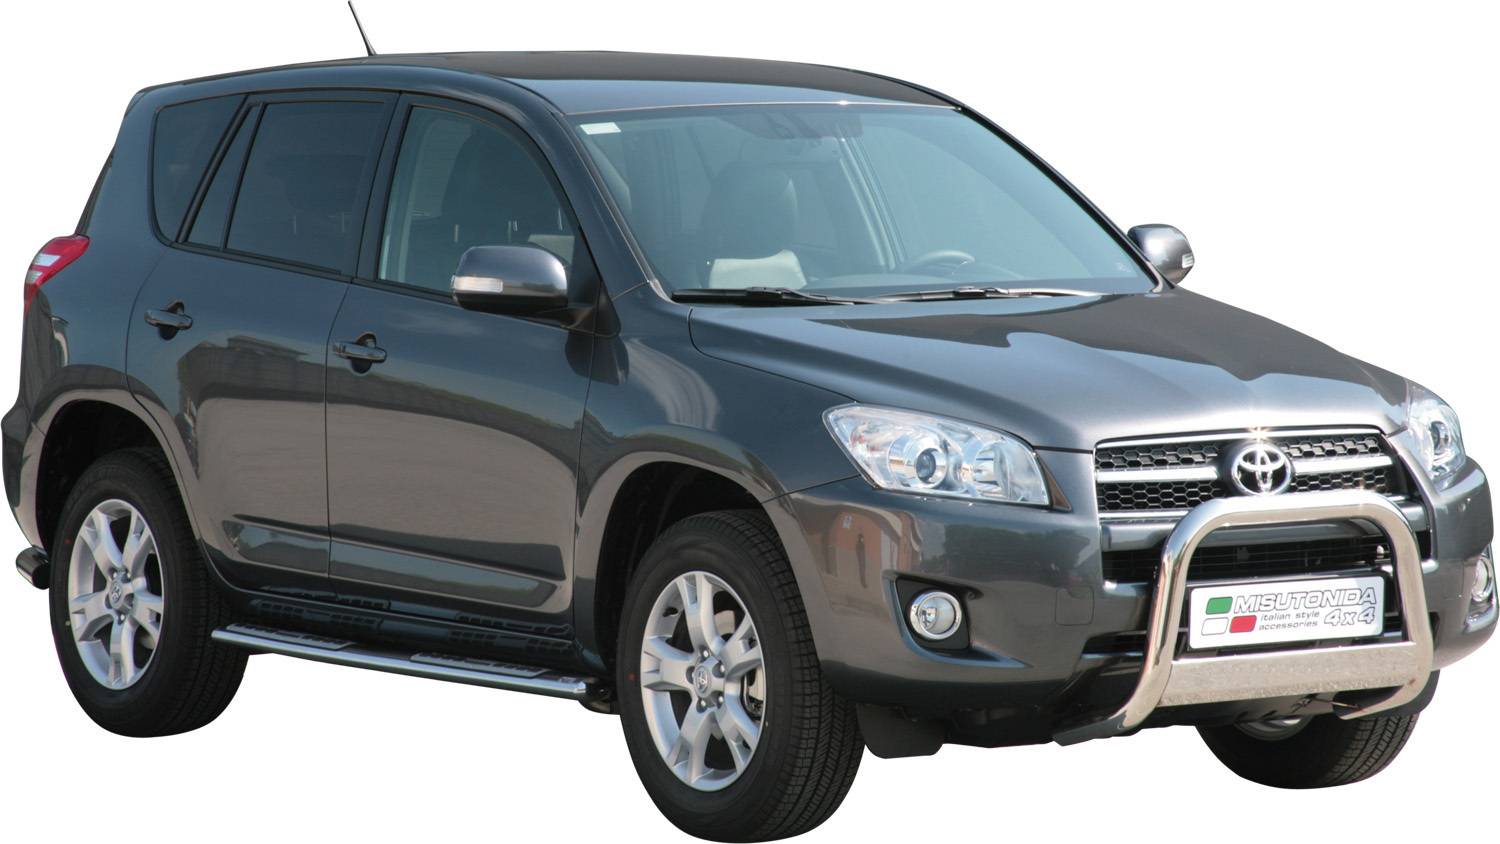 Toyota RAV4 EU - Valorauta 2009-2010 (Misutonida)